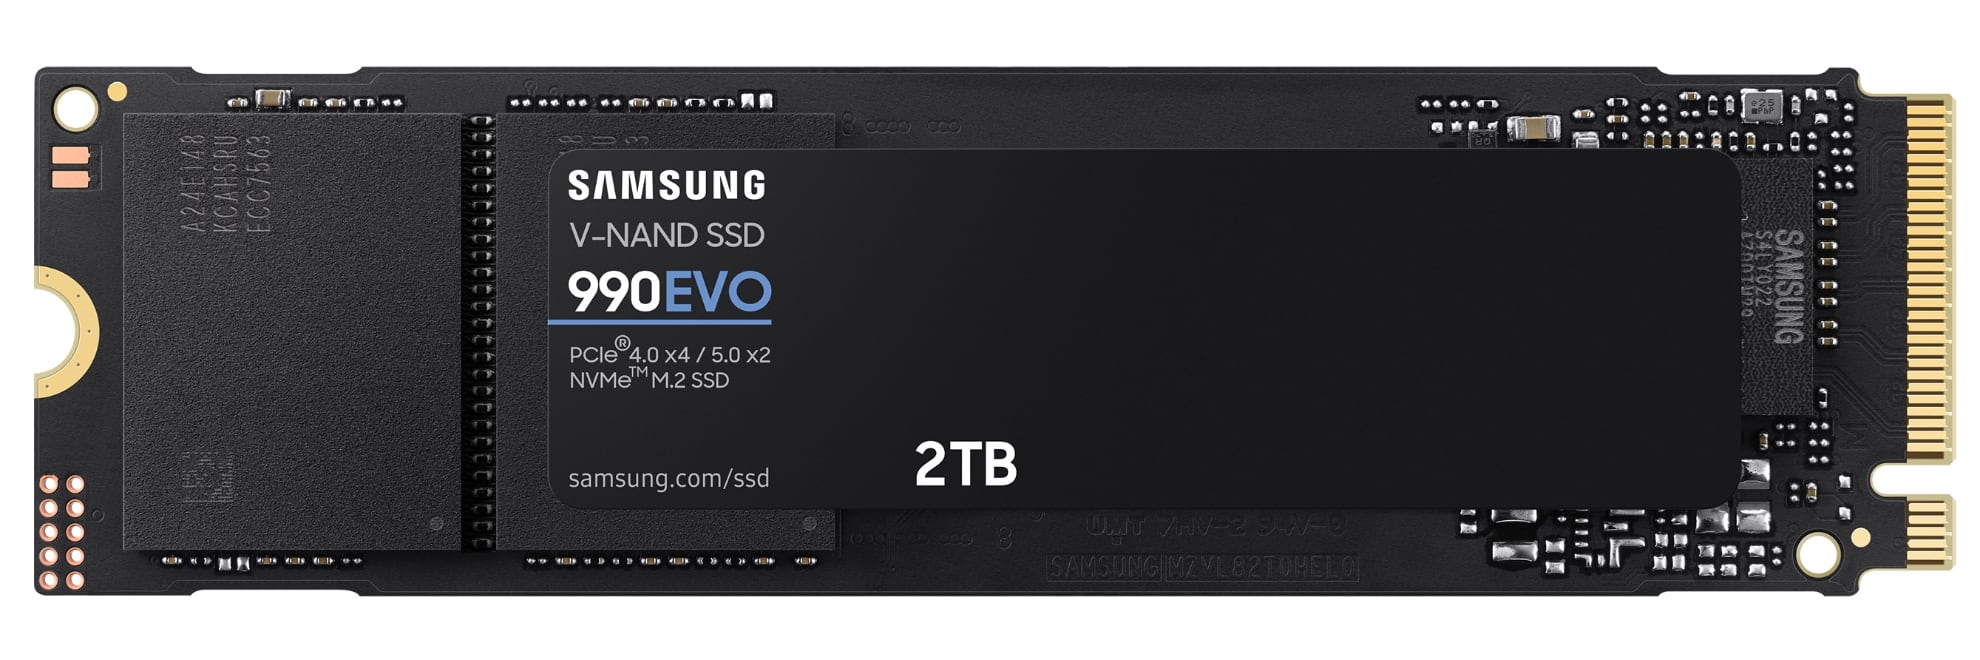 Samsung tillkännager höghastighets SSD 990 EVO, det kommer att kosta $ 210 för 2 TB-2